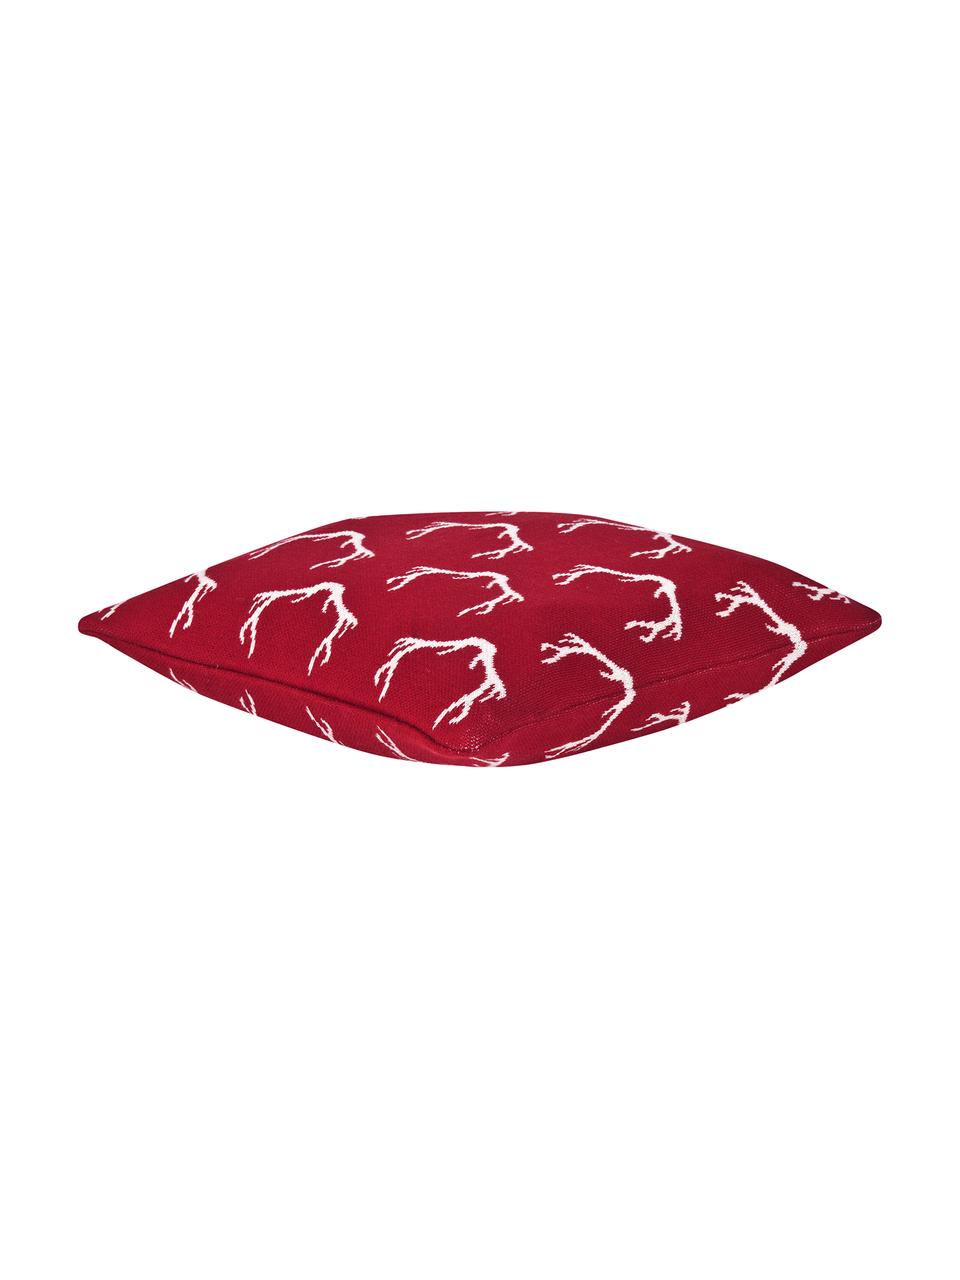 Strick-Kissenhülle Malte in Rot/Weiß, Baumwolle, Rot, Cremeweiß, 40 x 40 cm